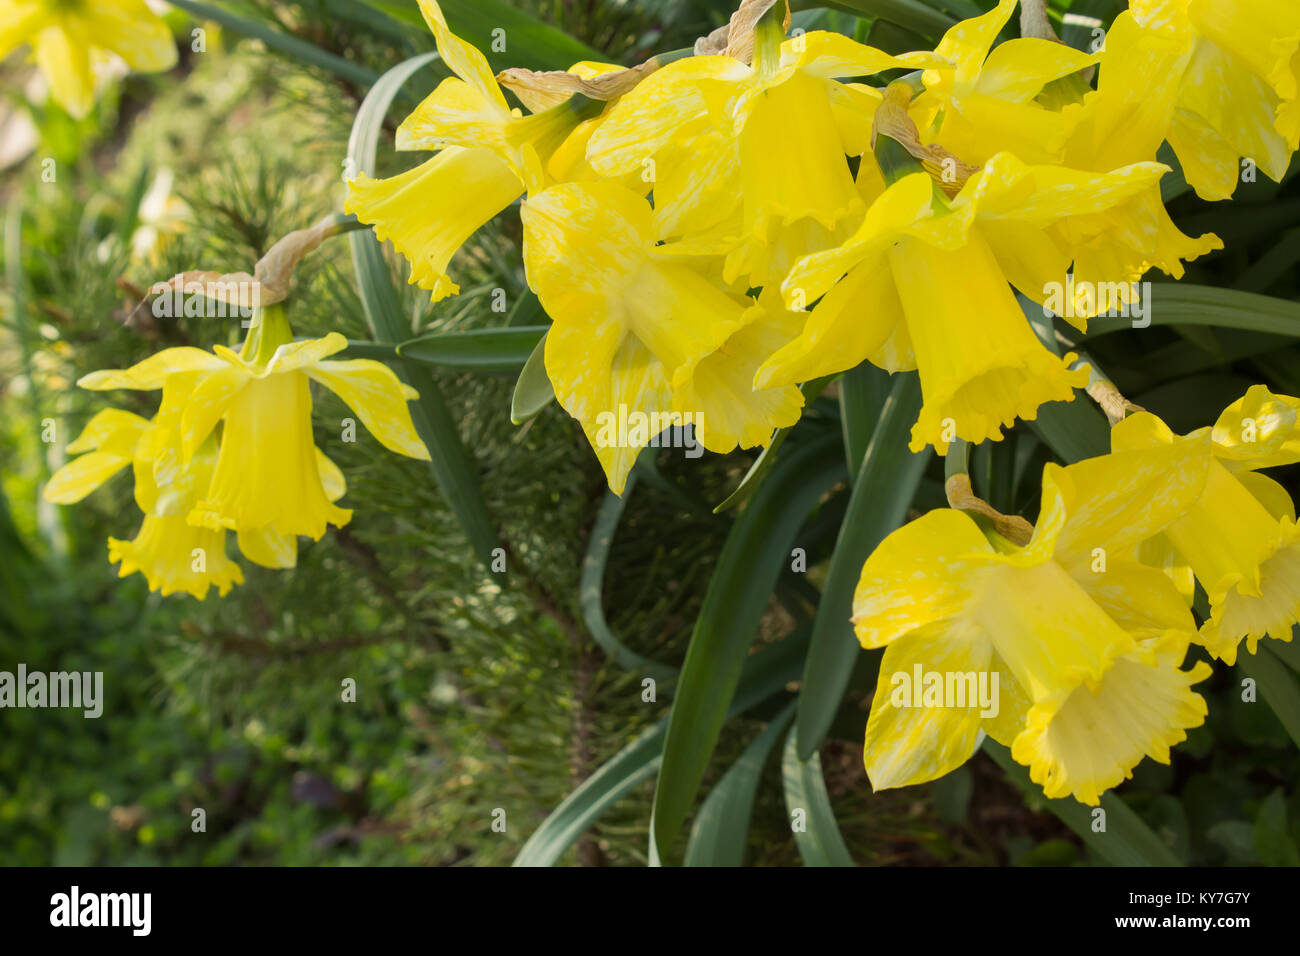 Fleurs jaune narcissus close up sur un fond d'herbe verte. Photo naturelle. Soft focus Banque D'Images